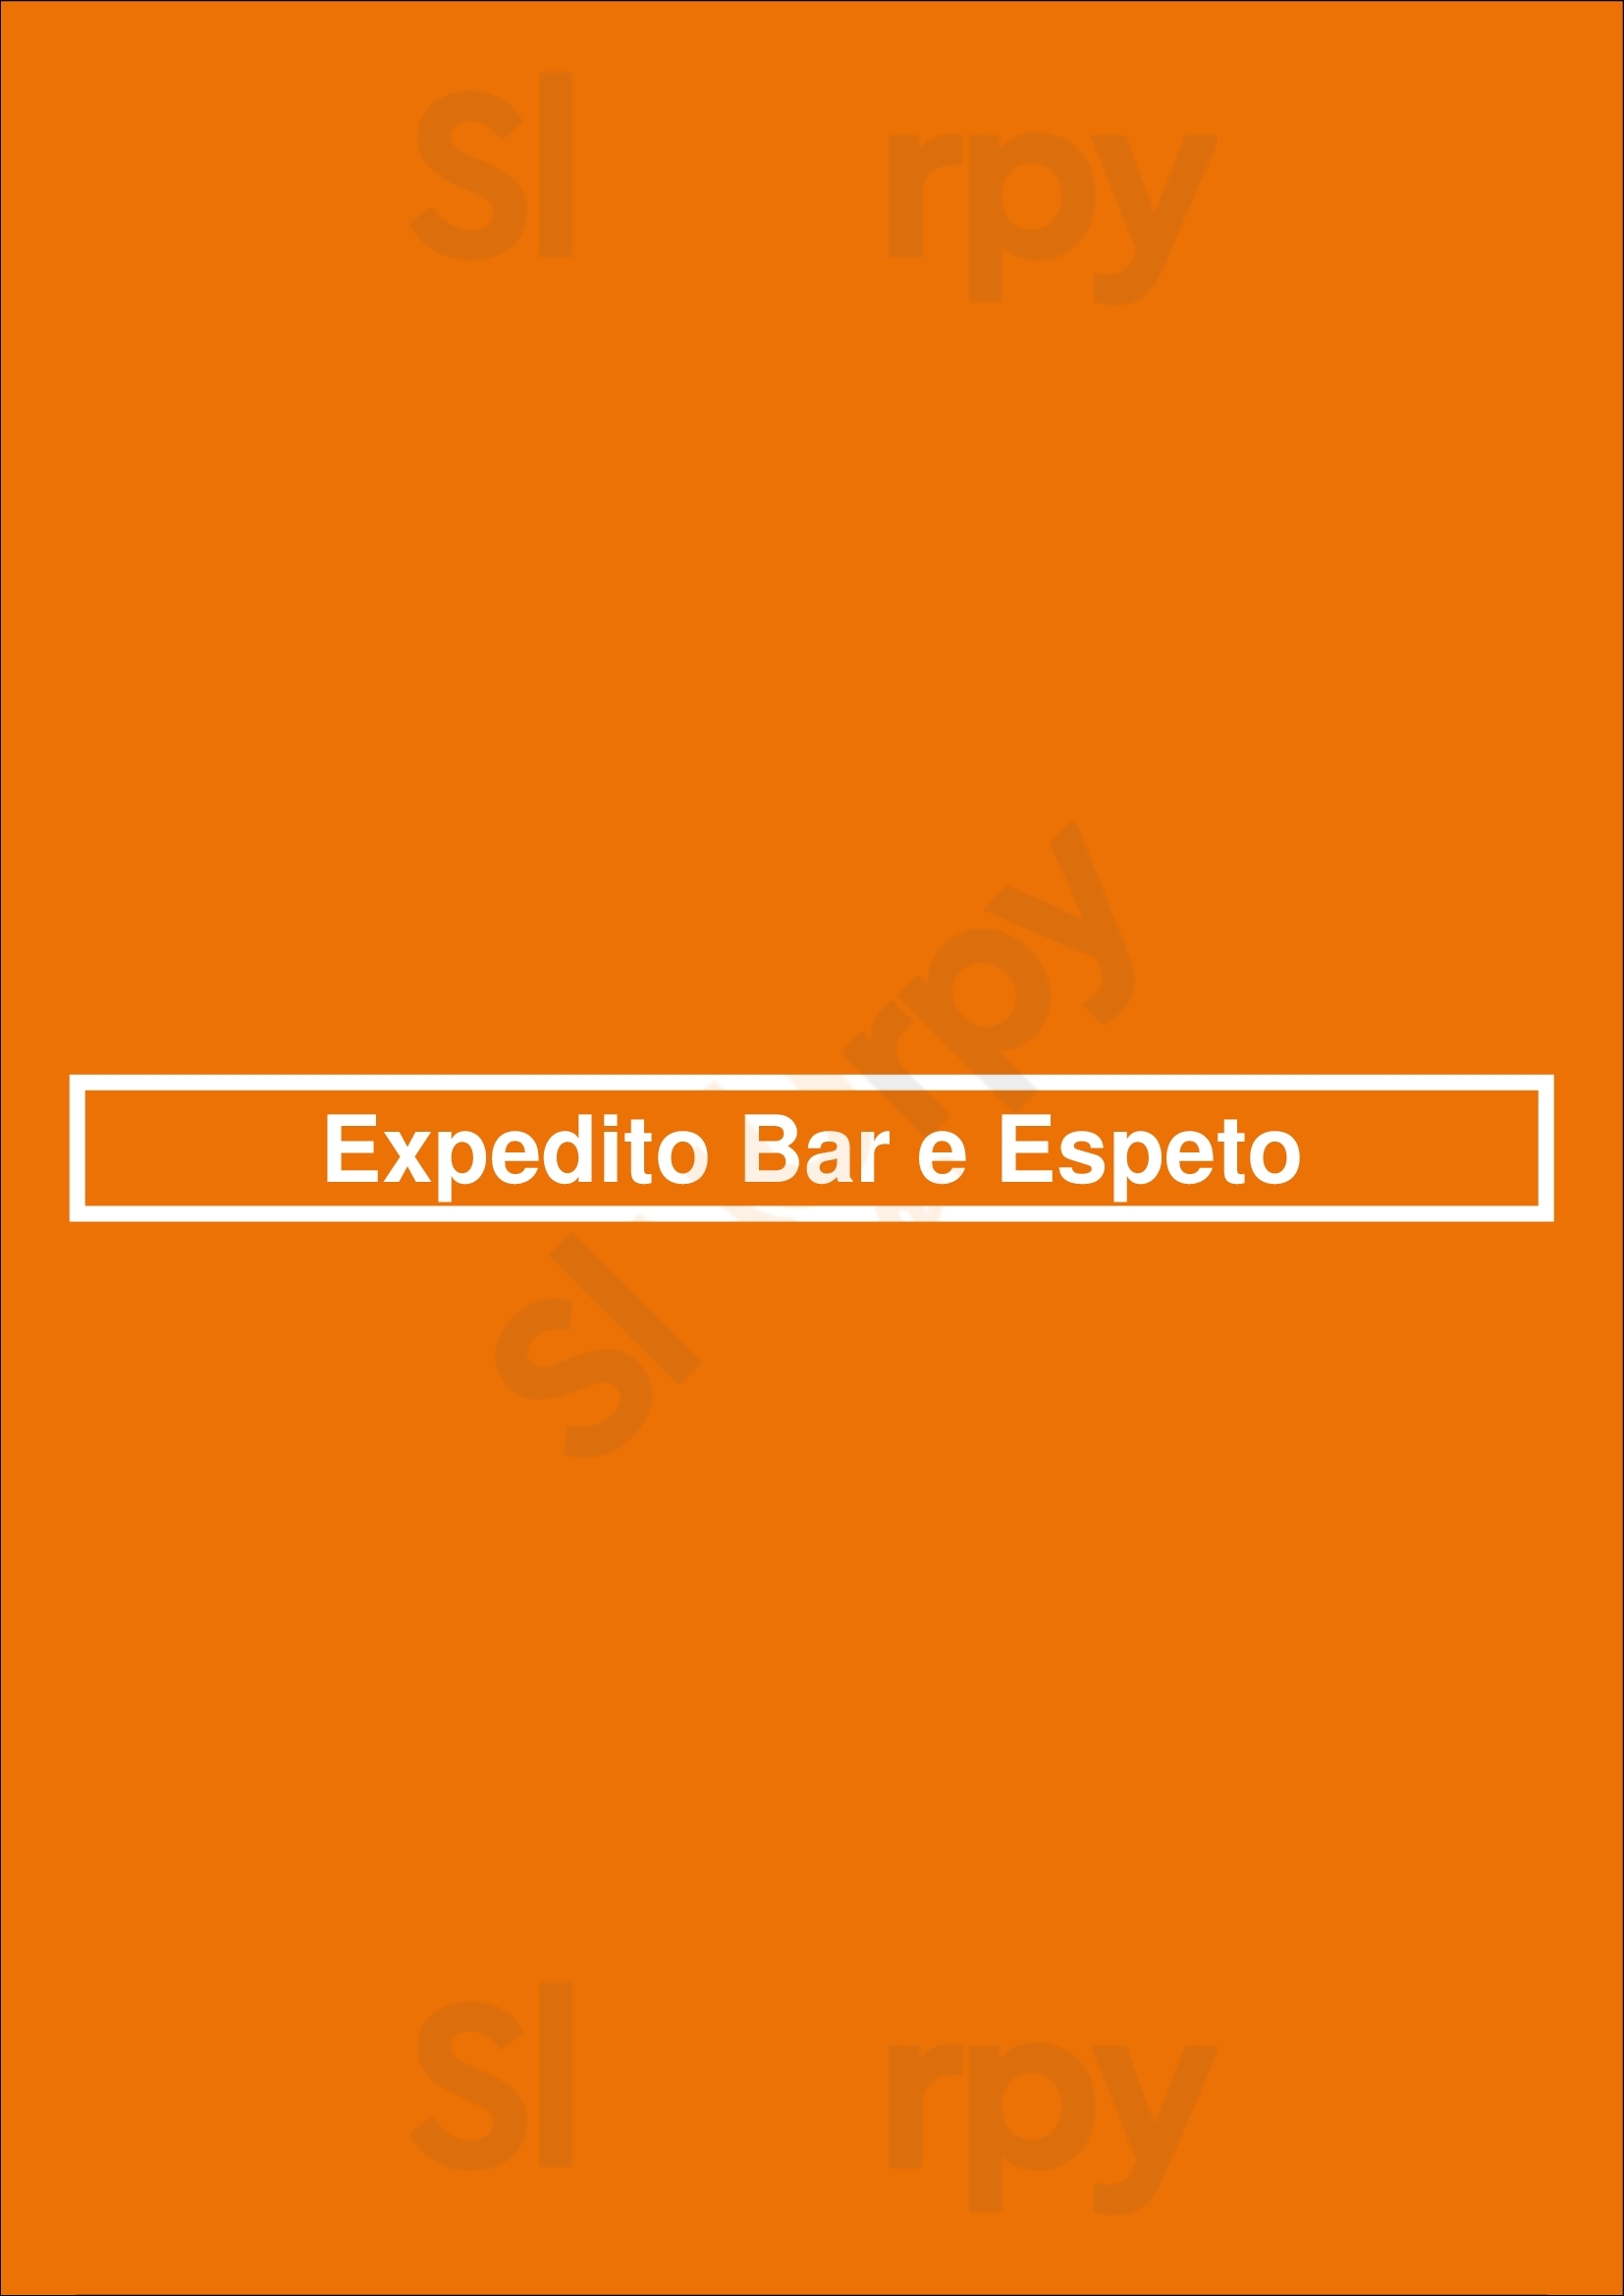 Expedito Bar E Espeto São Paulo Menu - 1